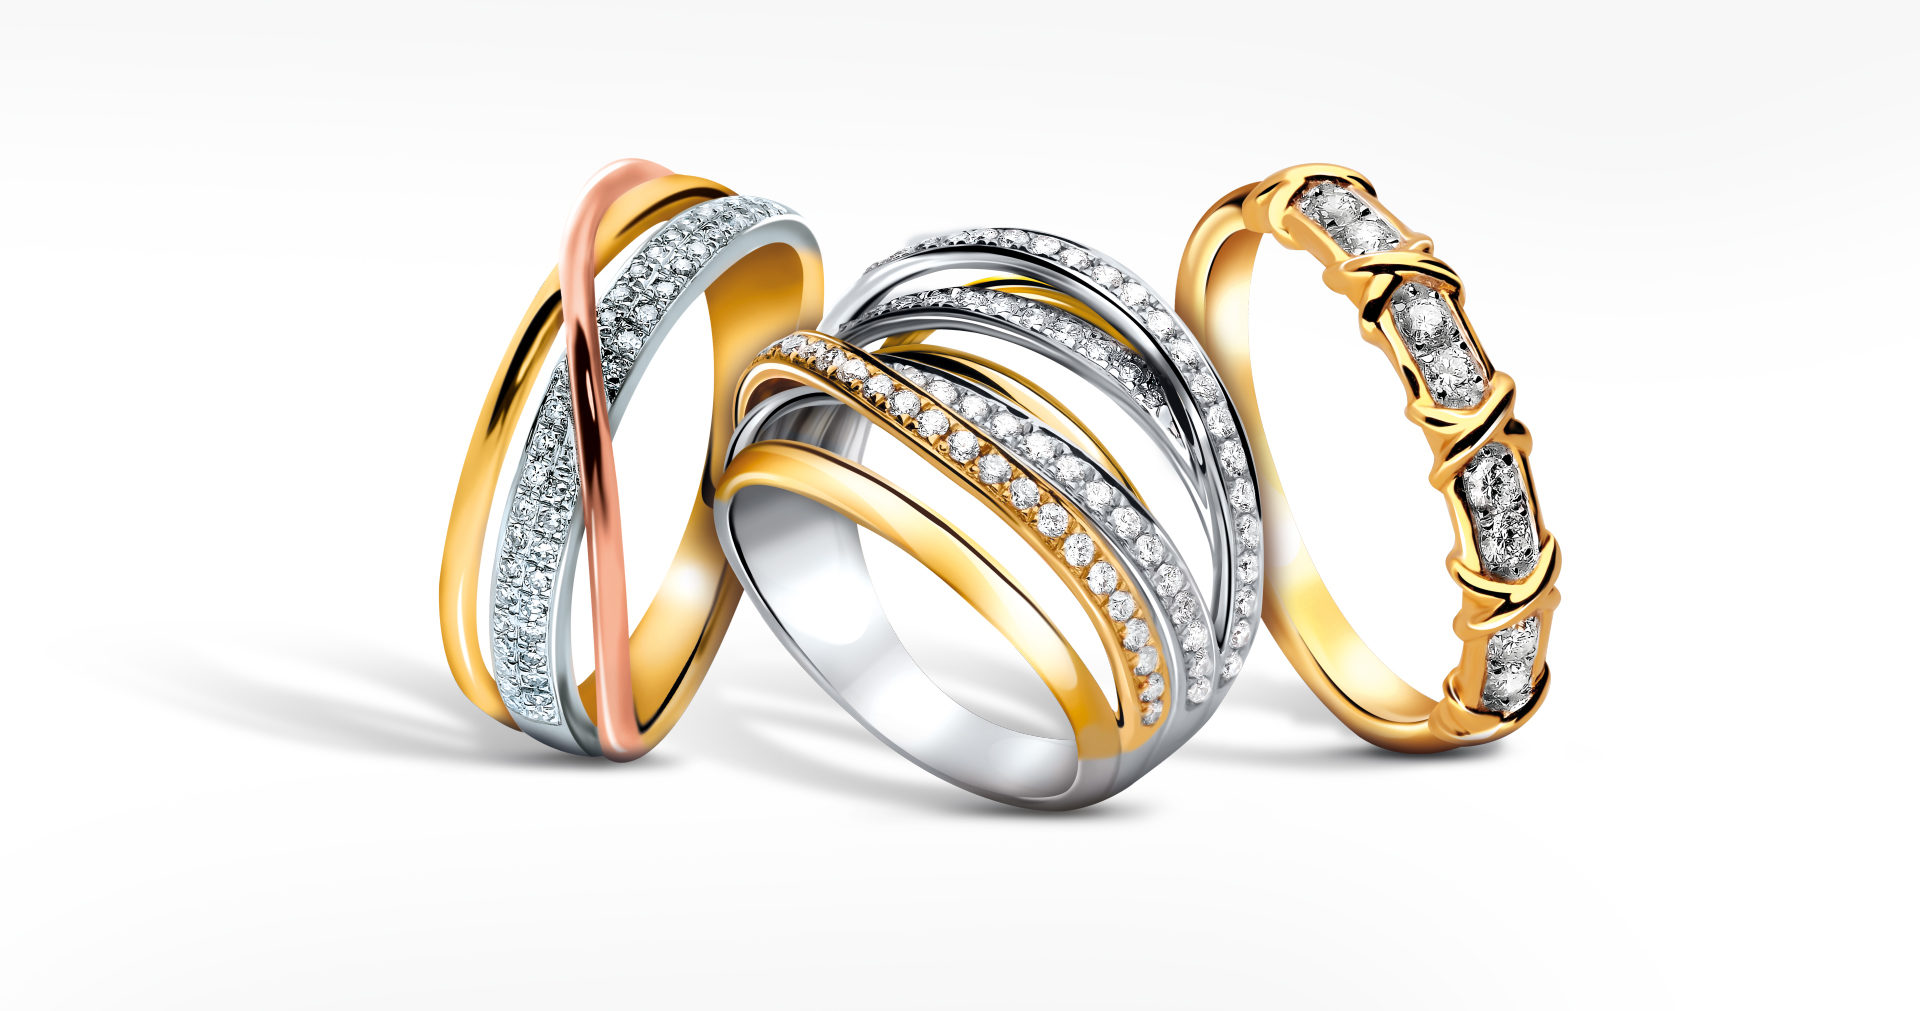 Three diamond rings